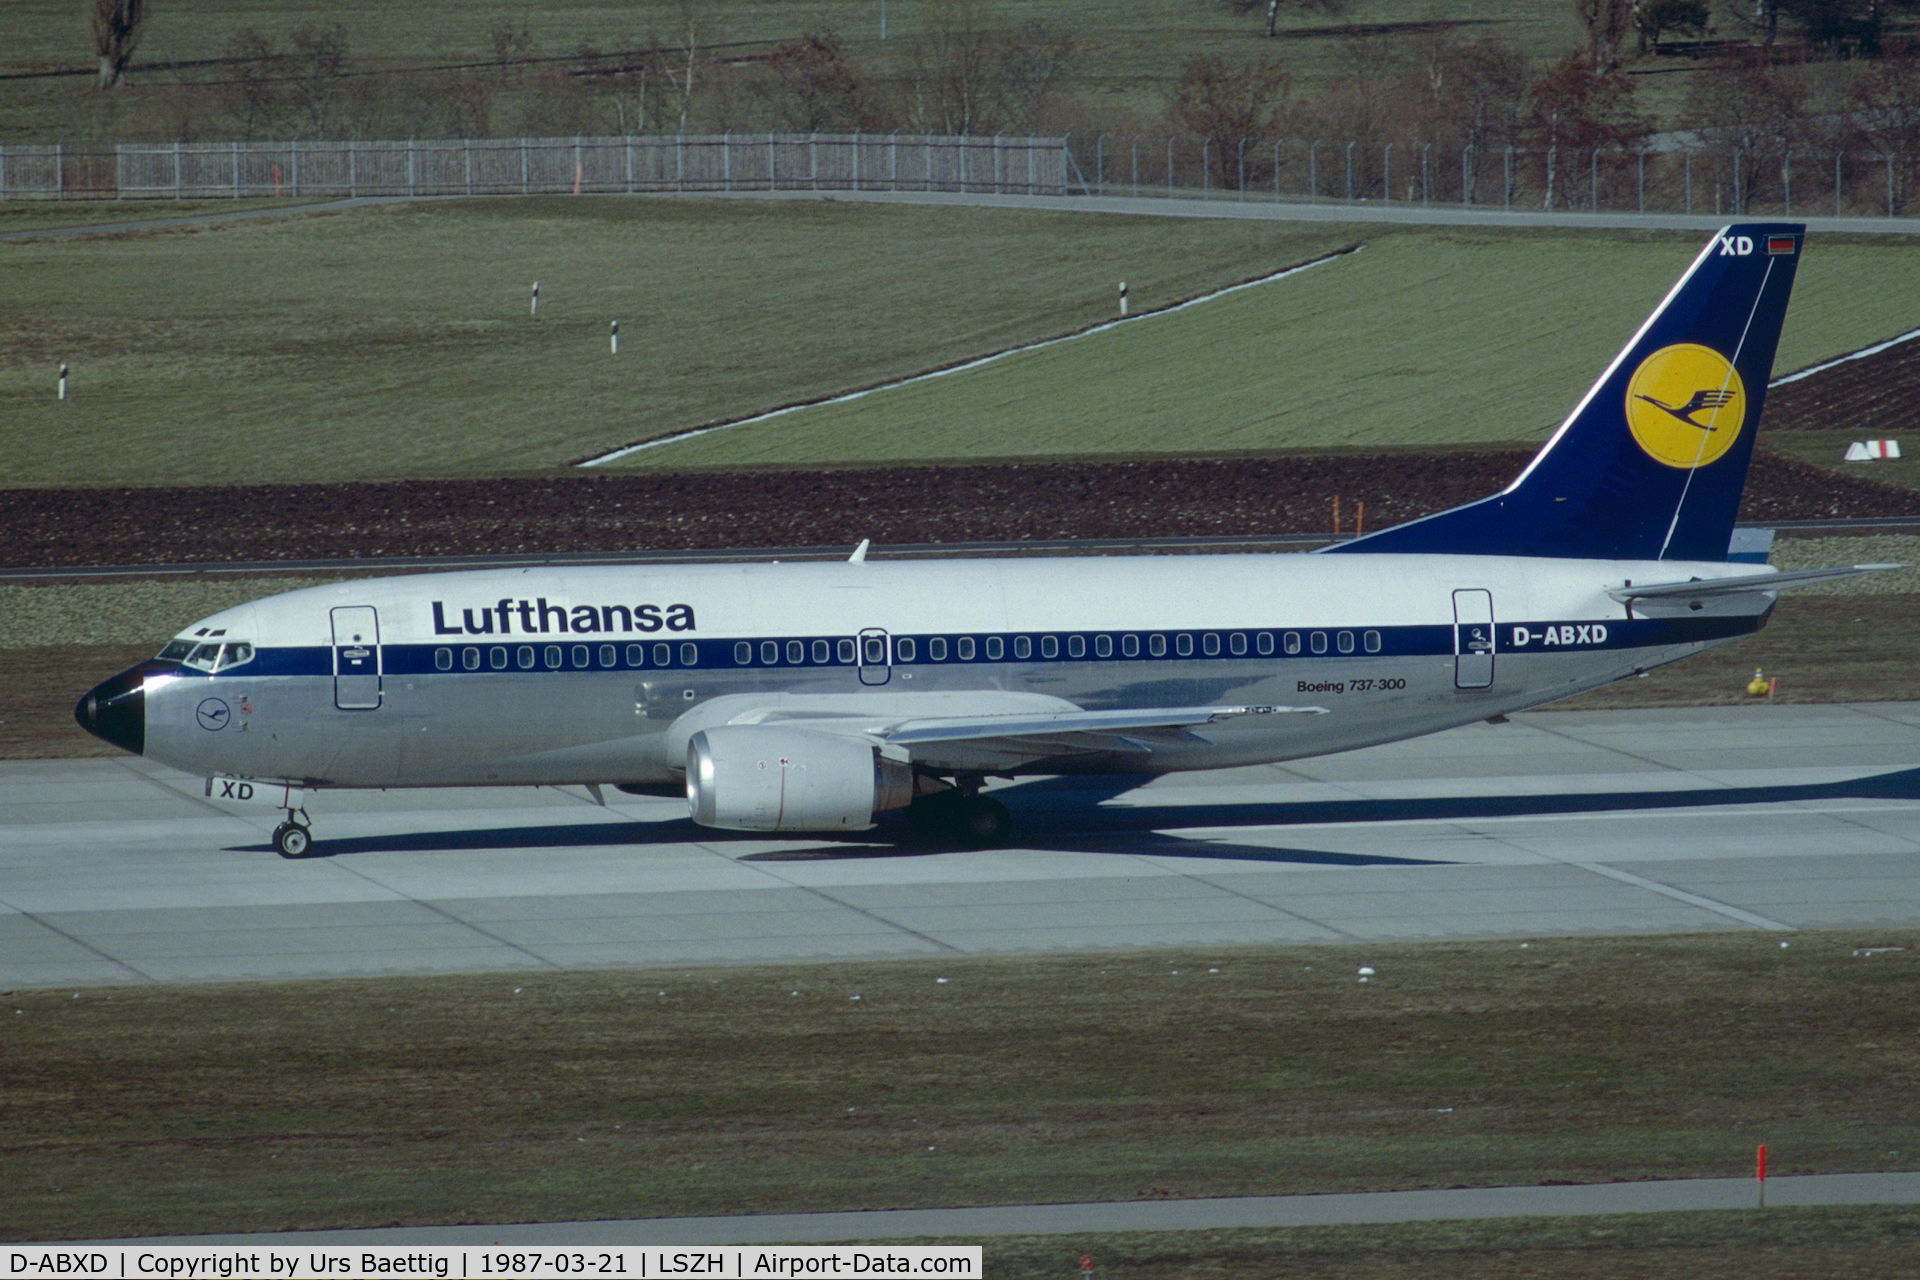 D-ABXD, 1986 Boeing 737-330 C/N 23525, 1987 ZRH